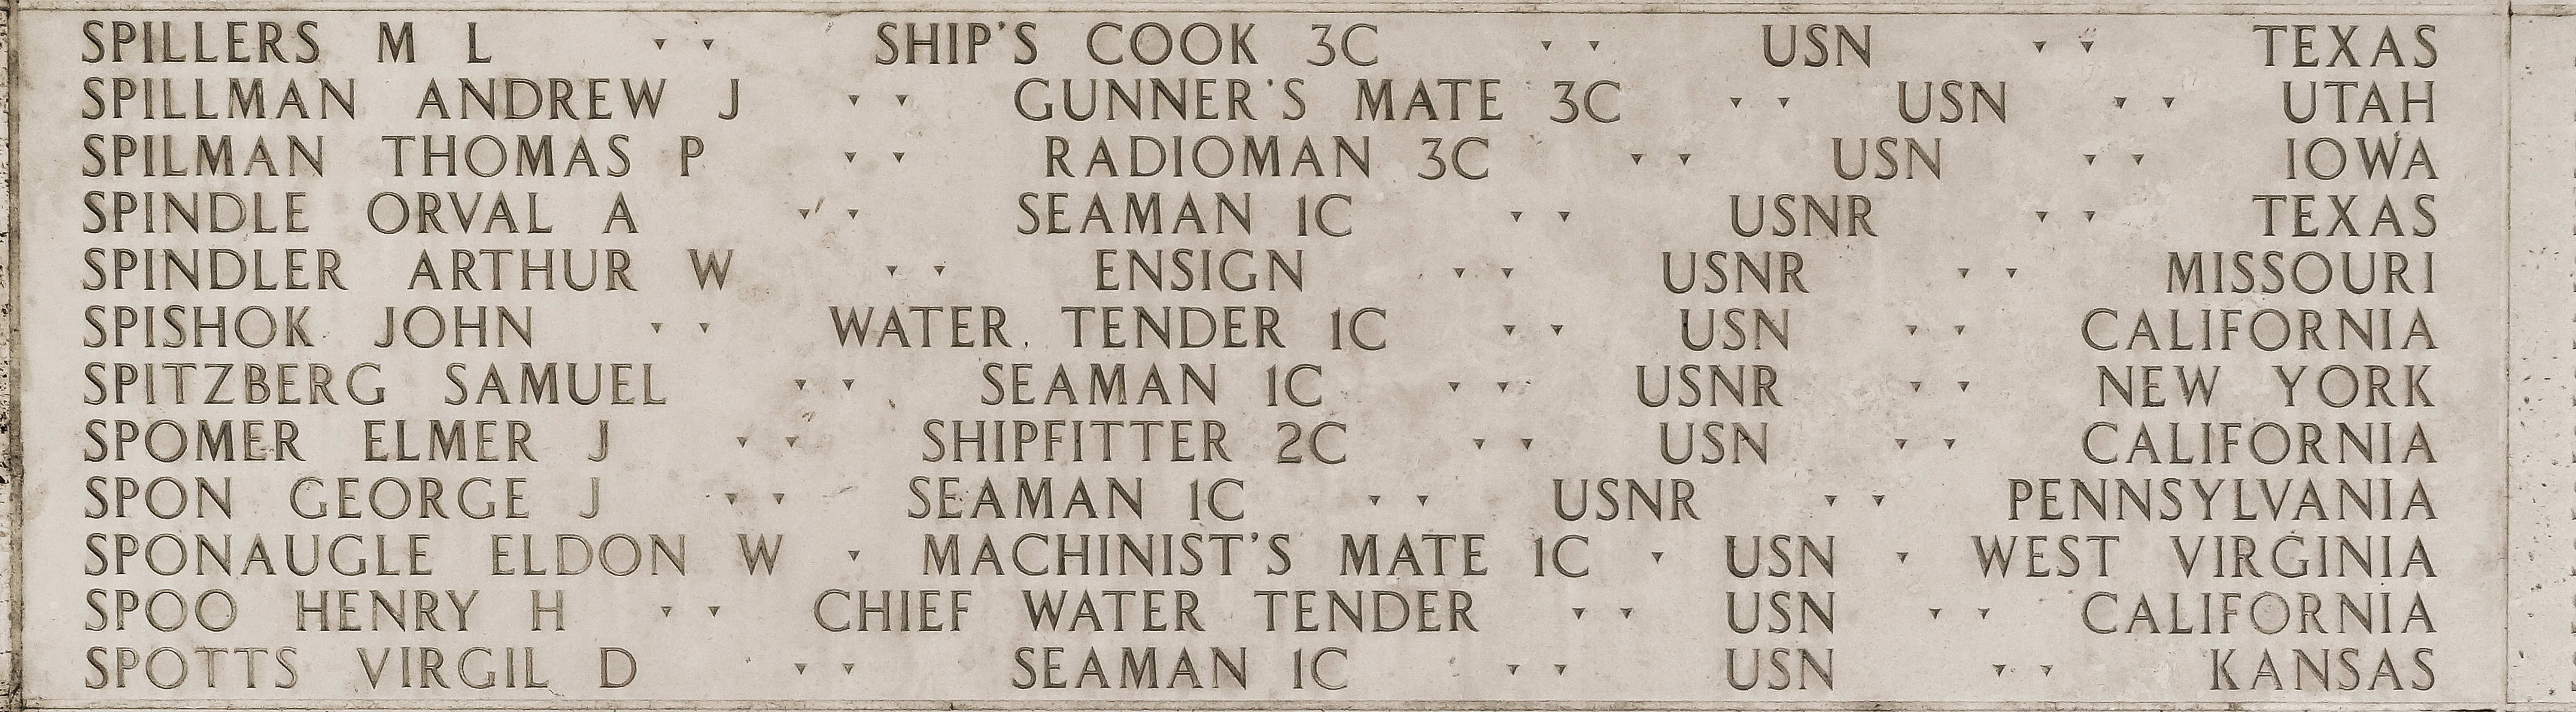 M. L. Spillers, Ship's Cook Third Class